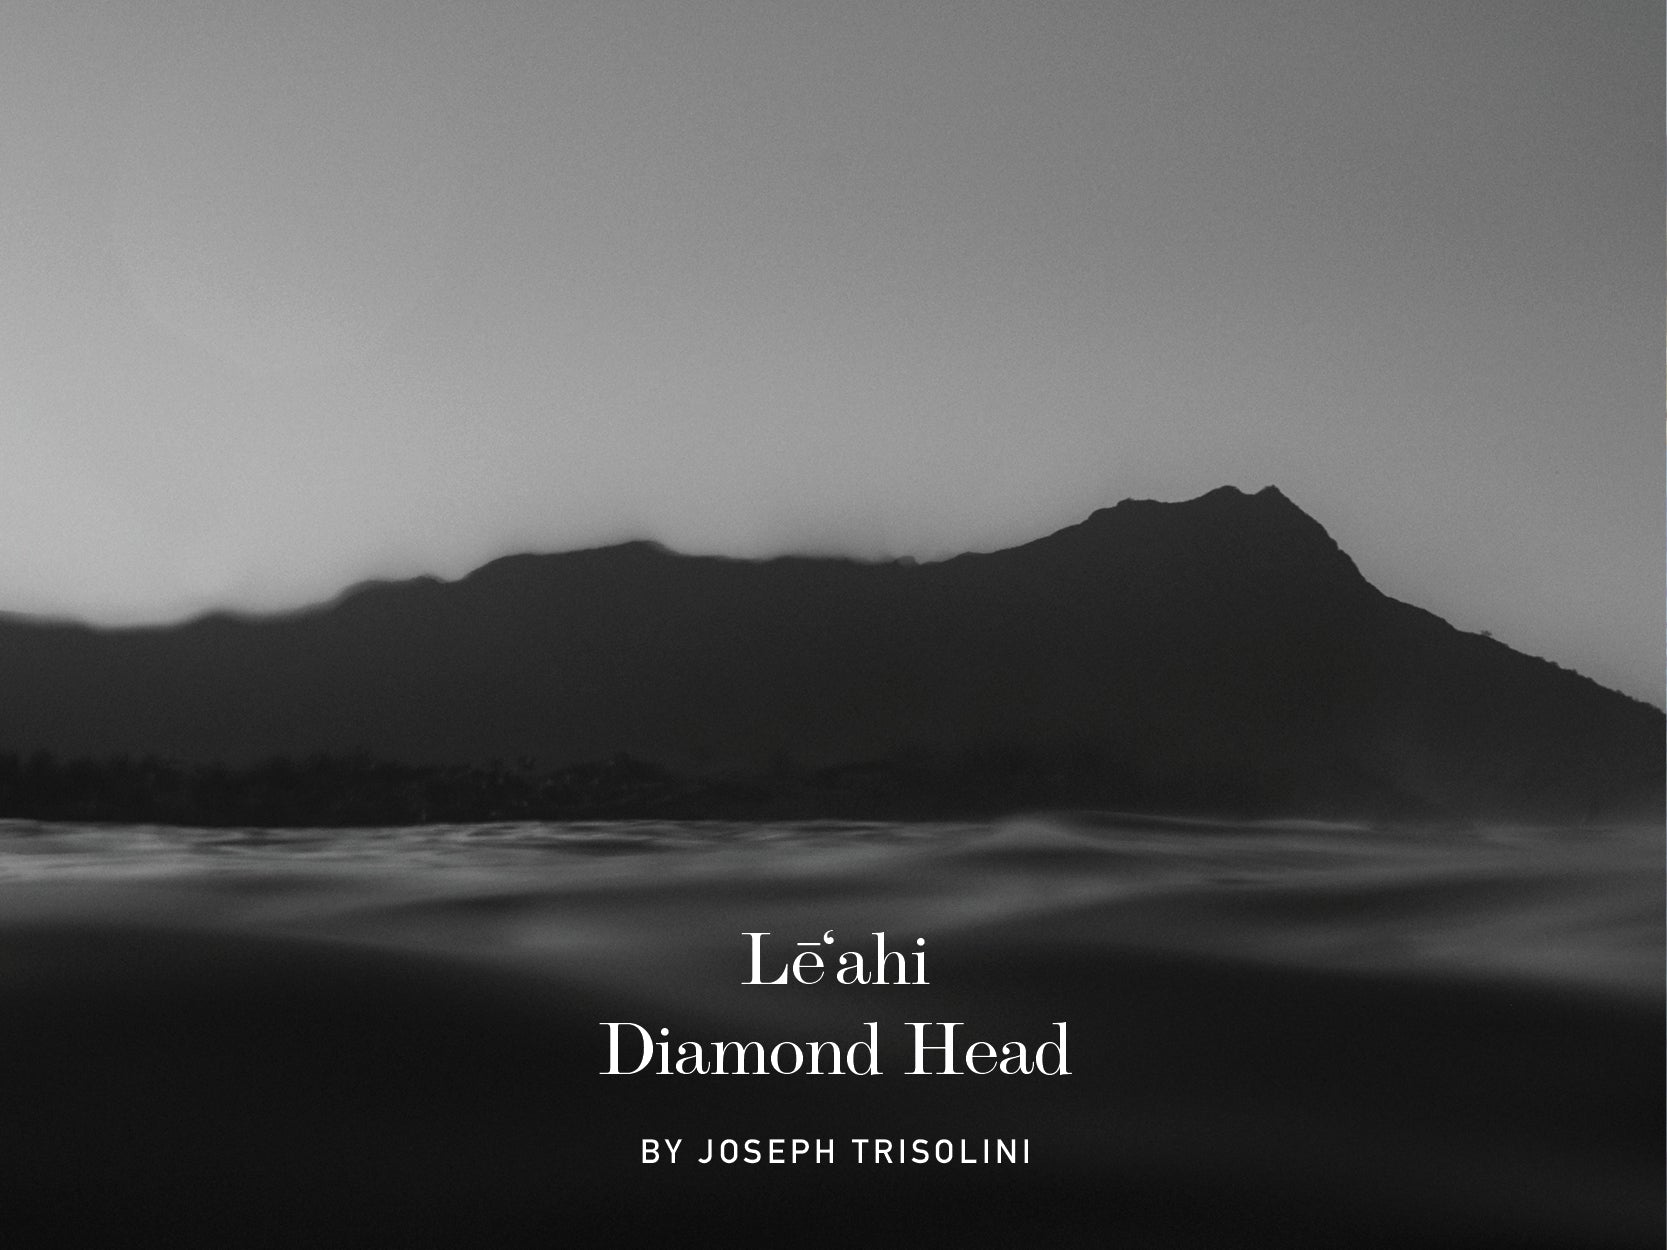 LĒʻAHI, DIAMOND HEAD